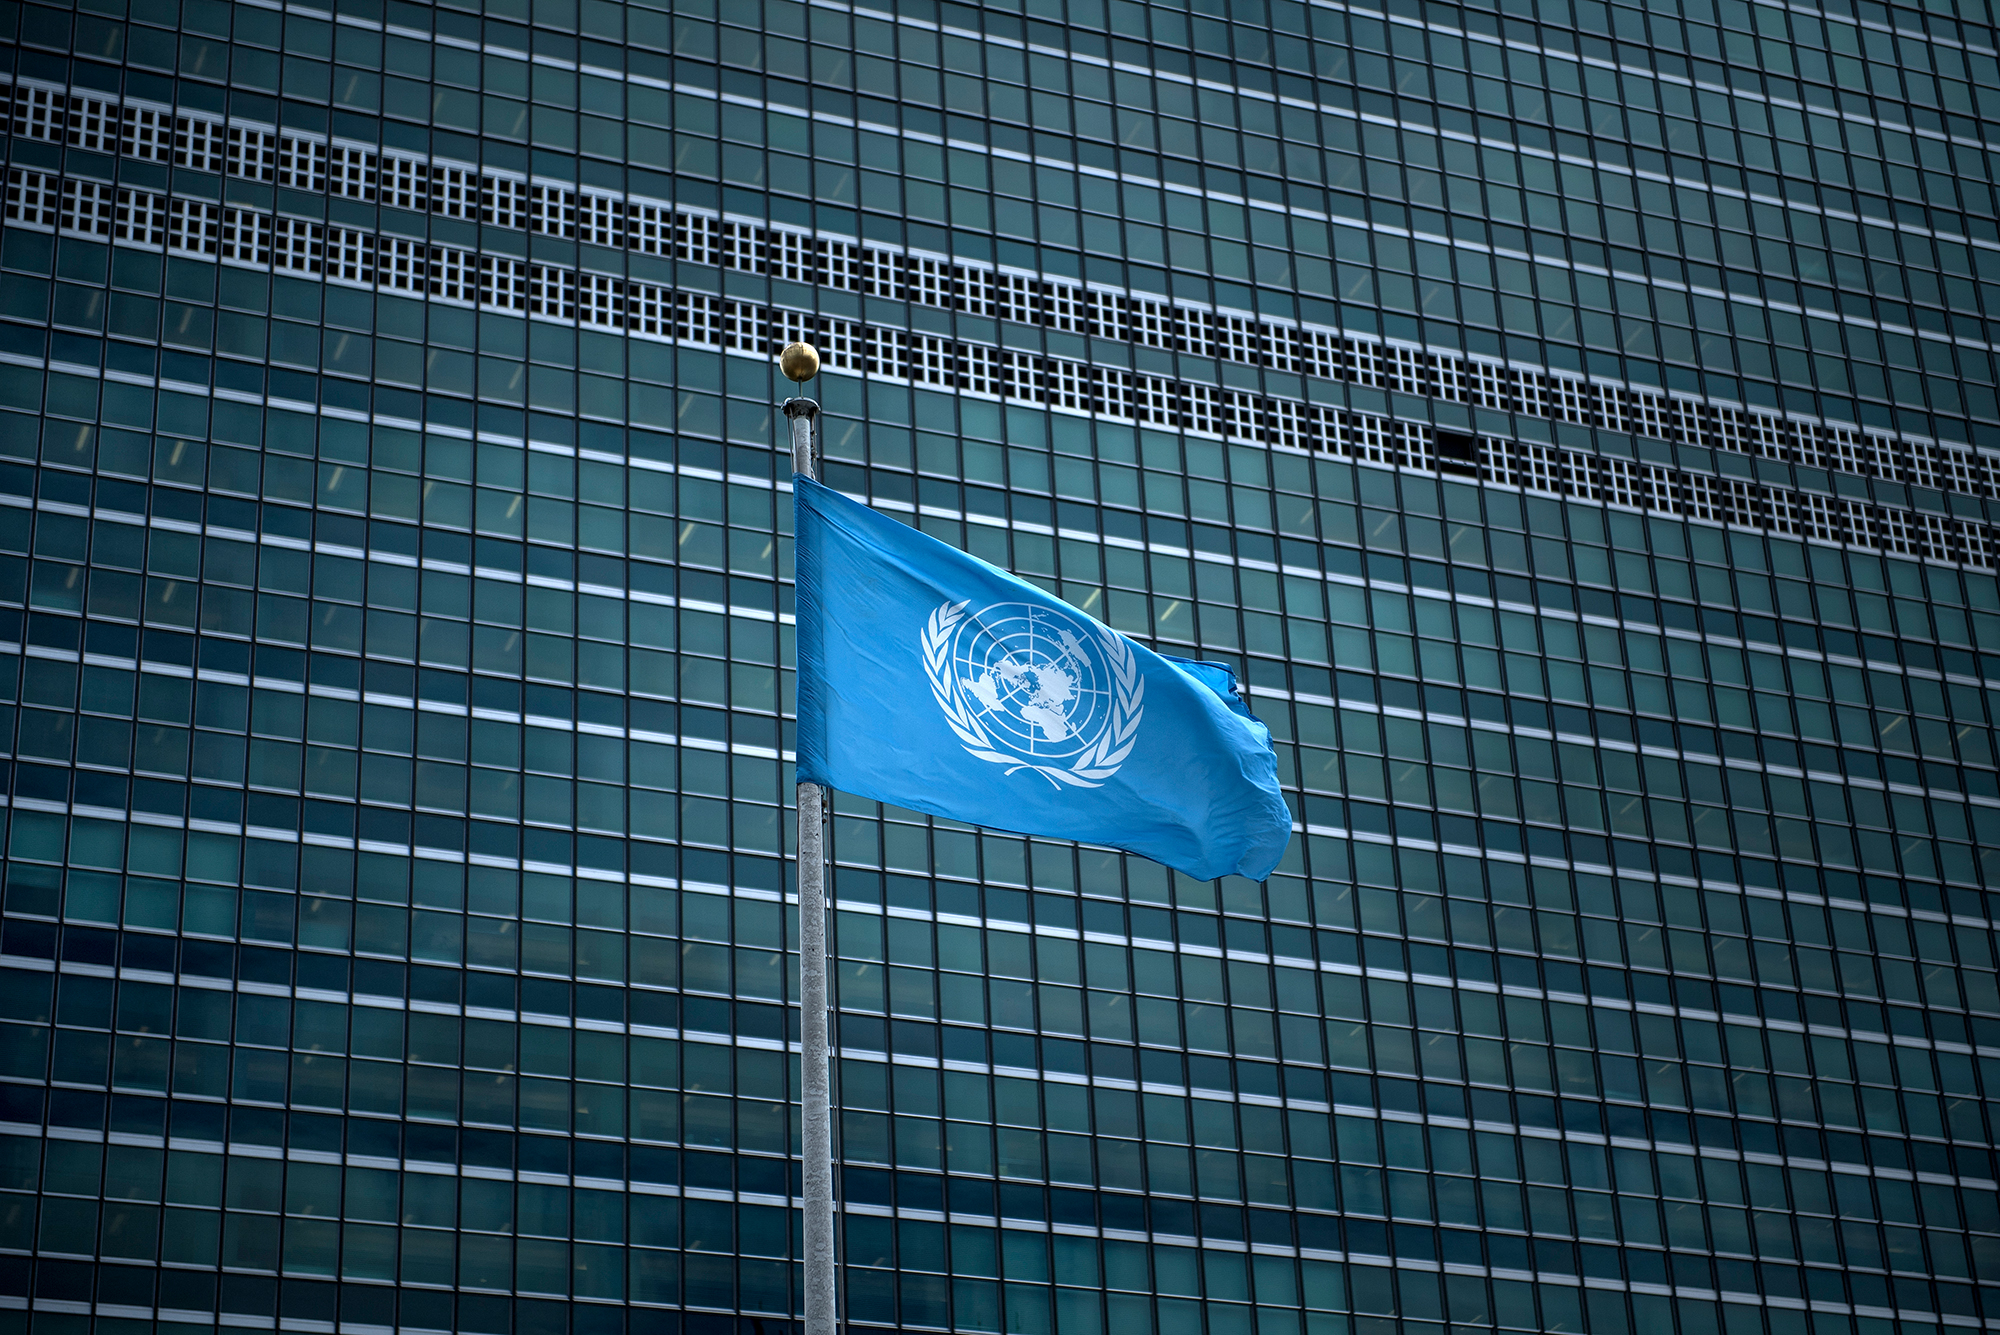 Flagge der Vereinten Nationen in New York